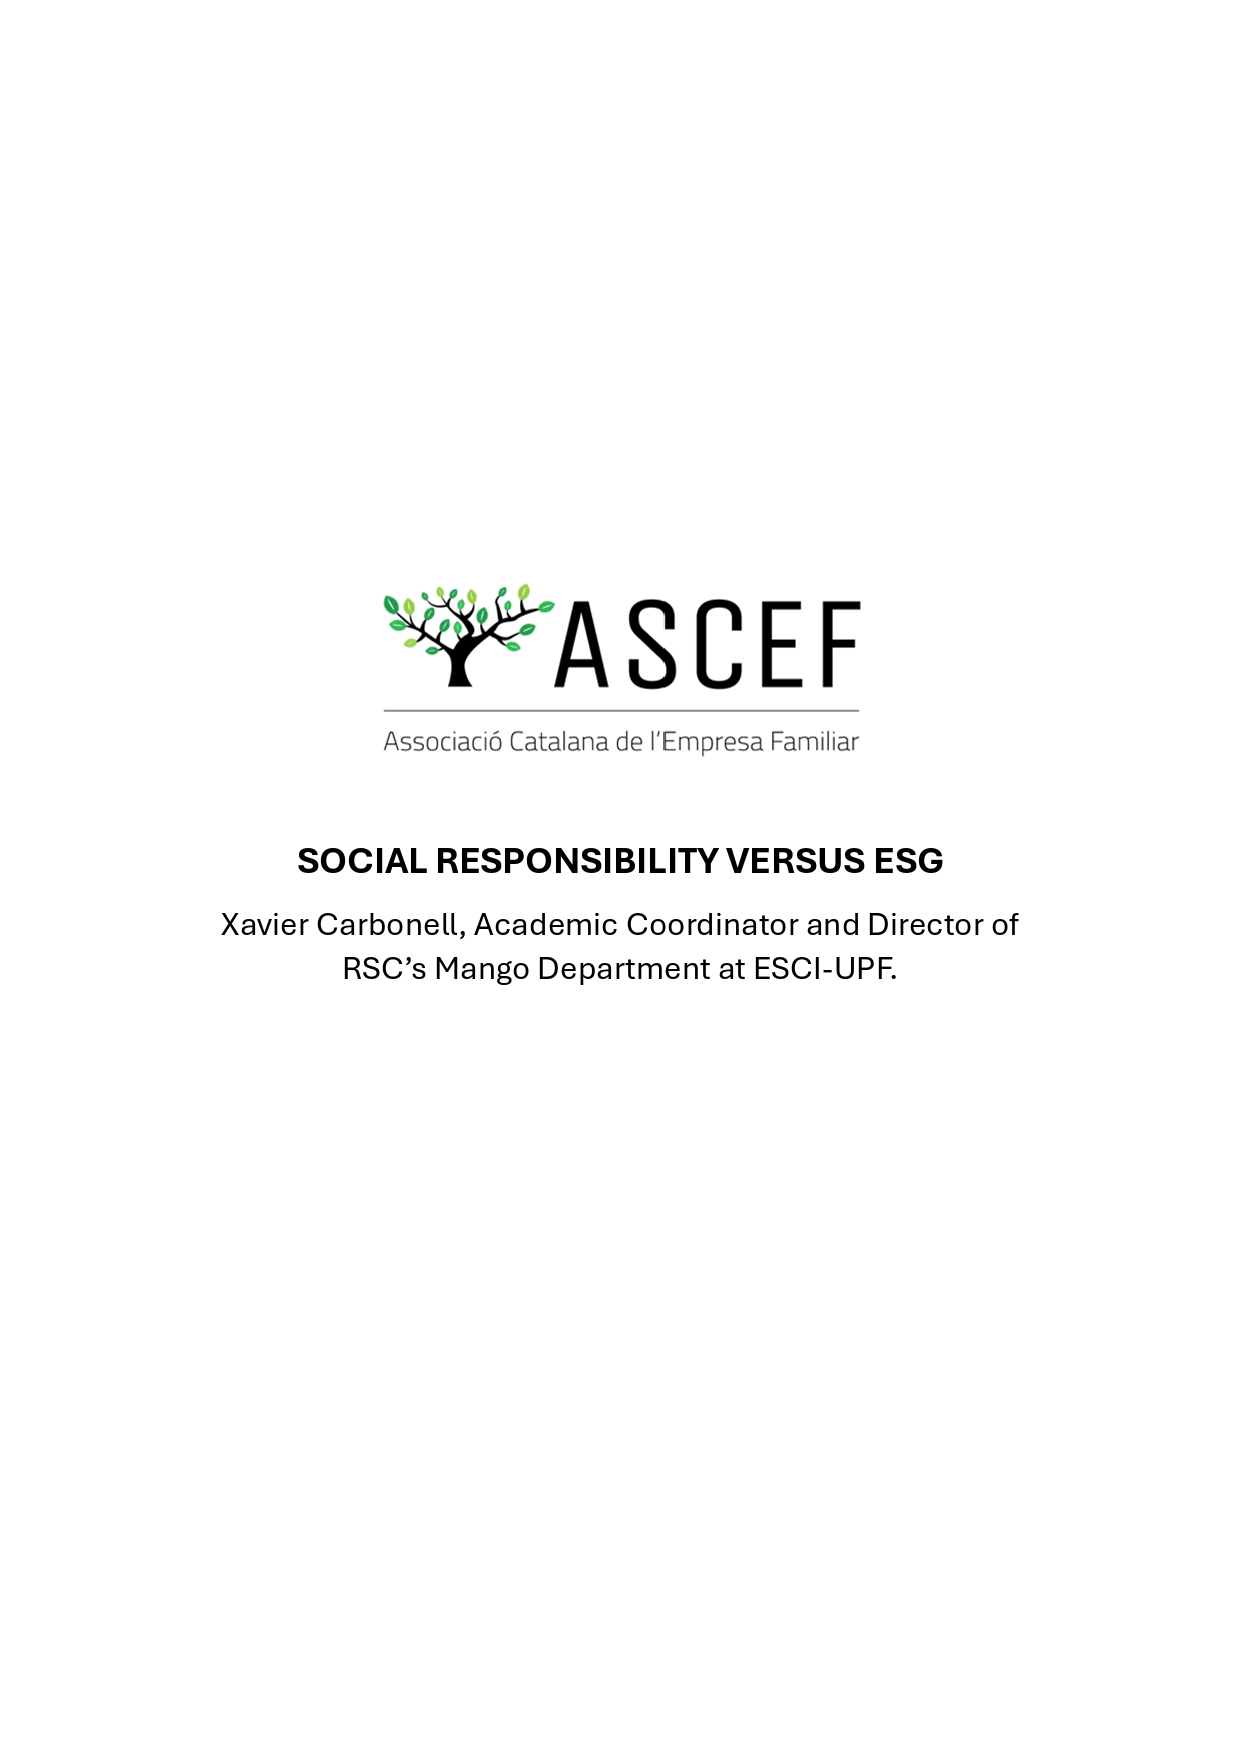 Social Responsability versus ESG